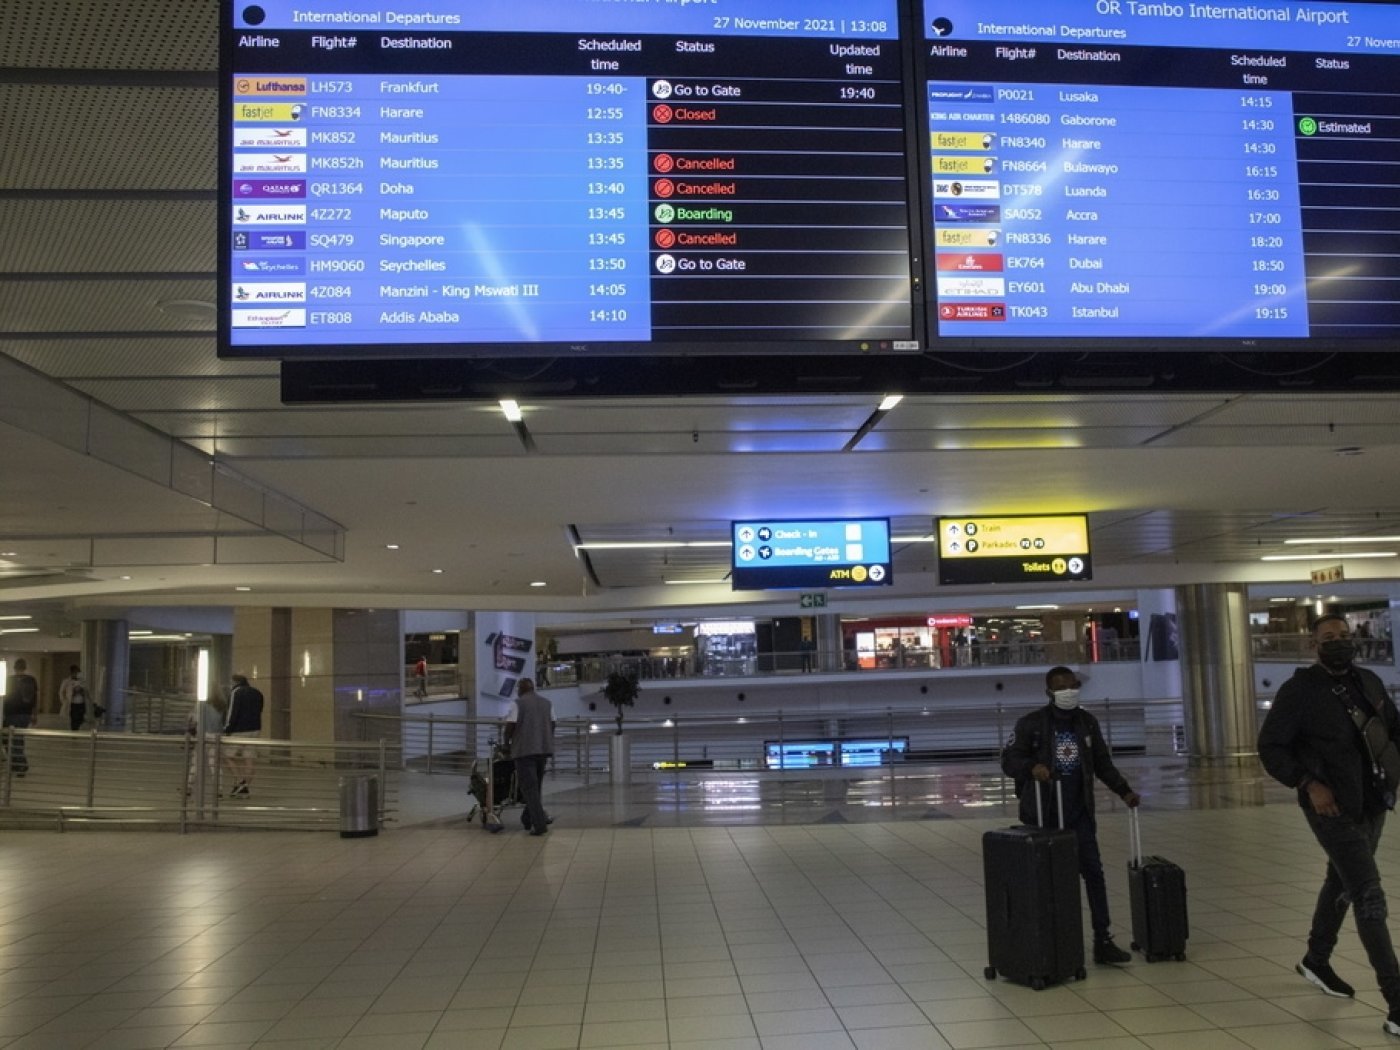 Un tableau d'information indique les vols annulés à l'aéroport international OR Thambo, en Afrique du Sud.